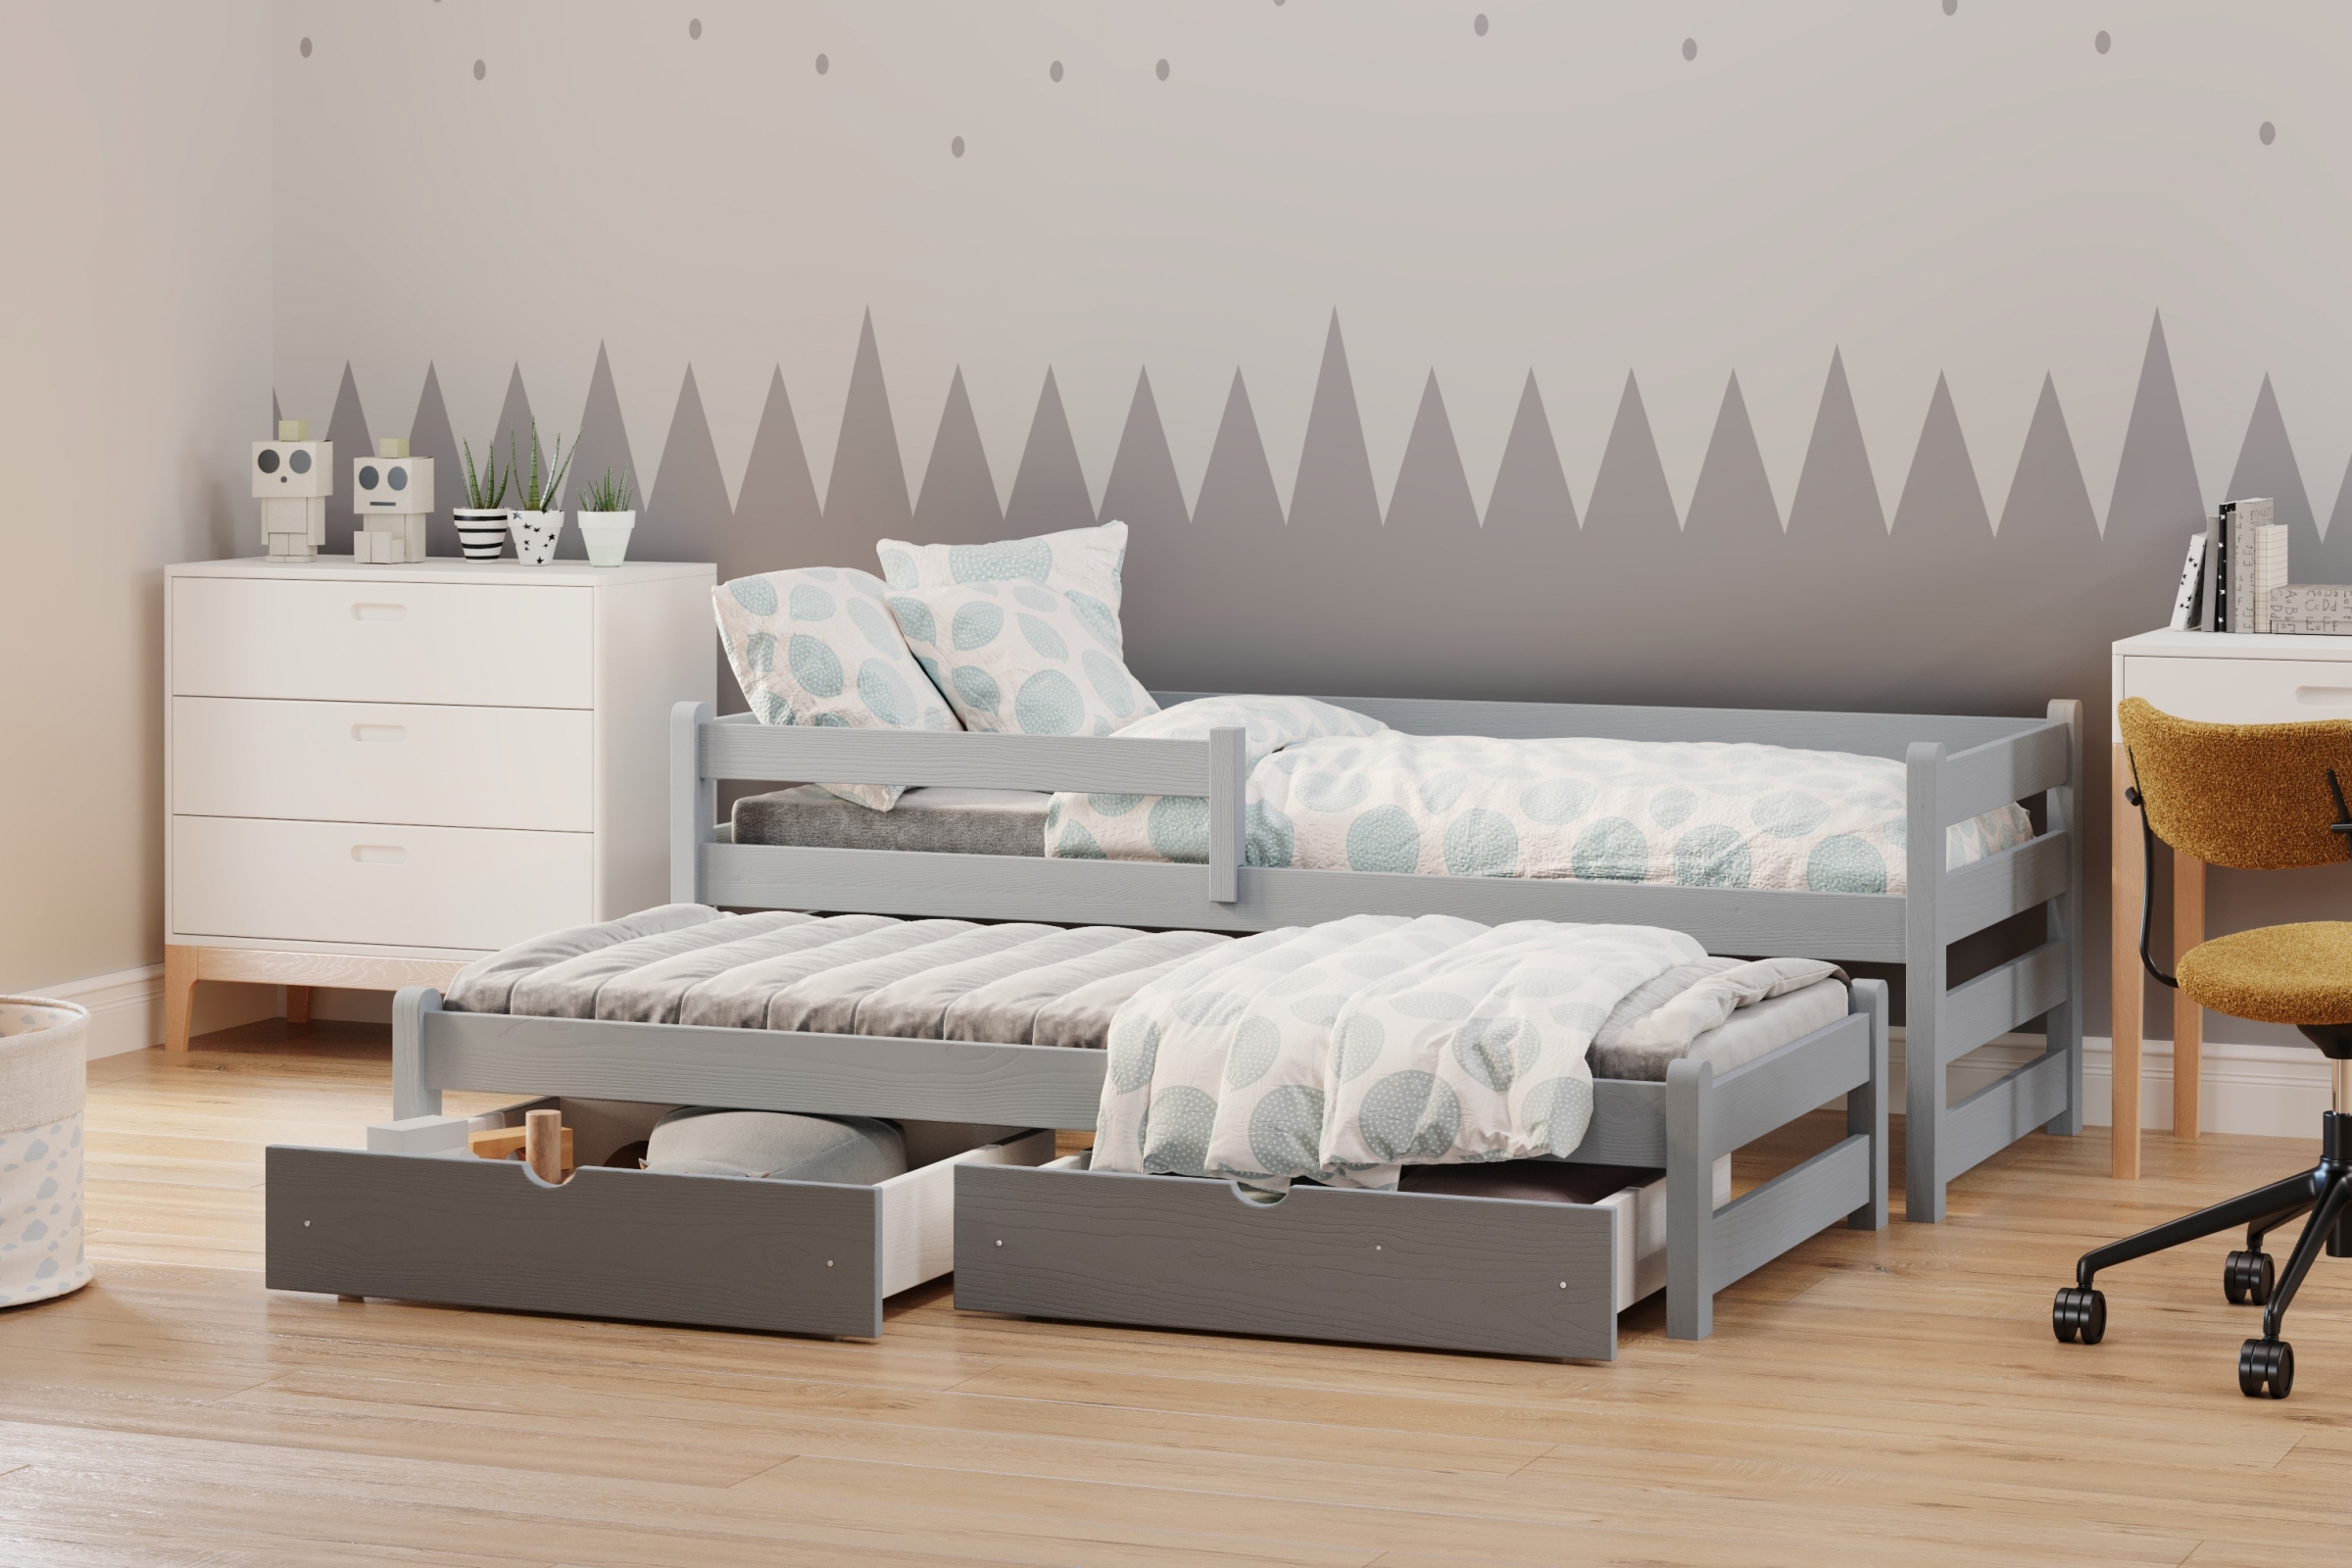 postel dětské přízemní výsuvná Alis DPV 001 - šedý, 90x180 postel přízemní výsuvná Alis - Barva šedý - aranzacja